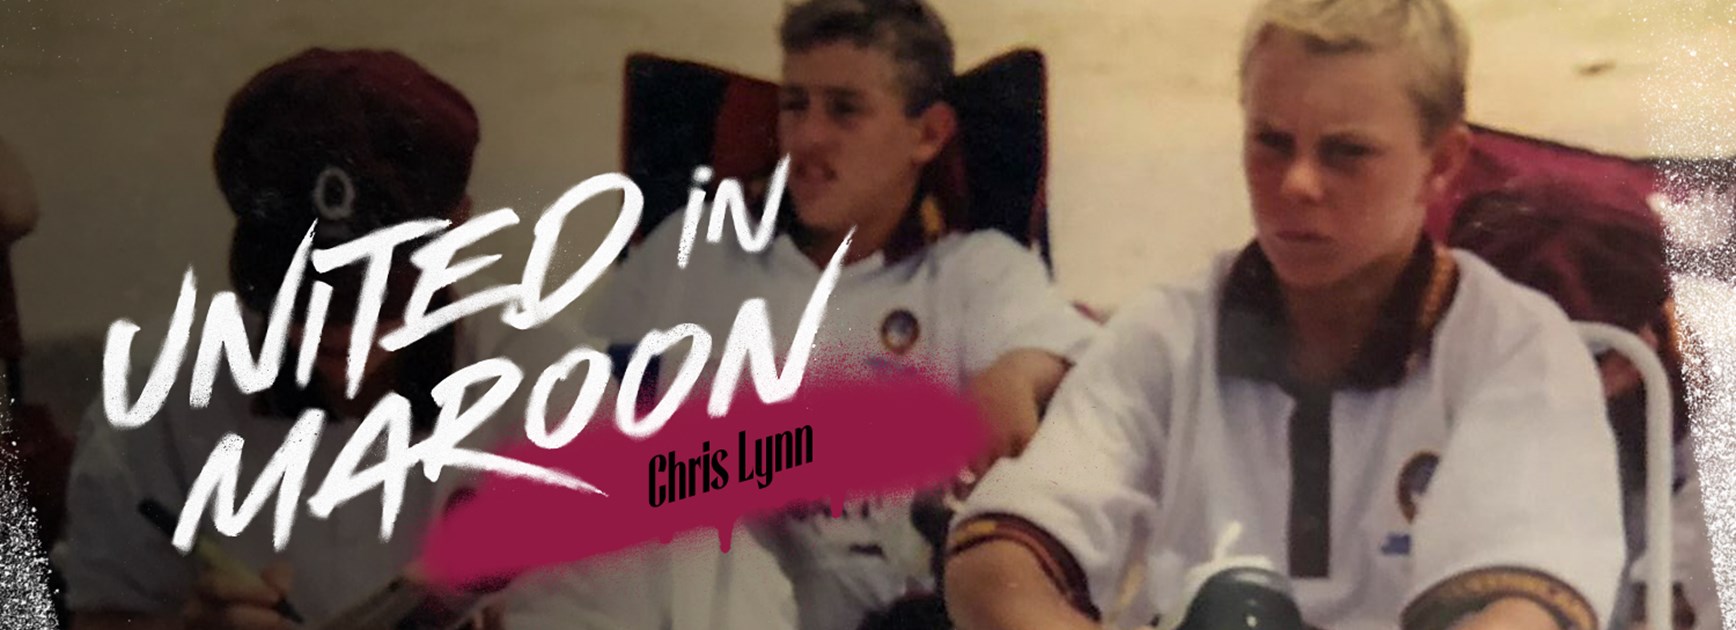 United in maroon: Chris Lynn